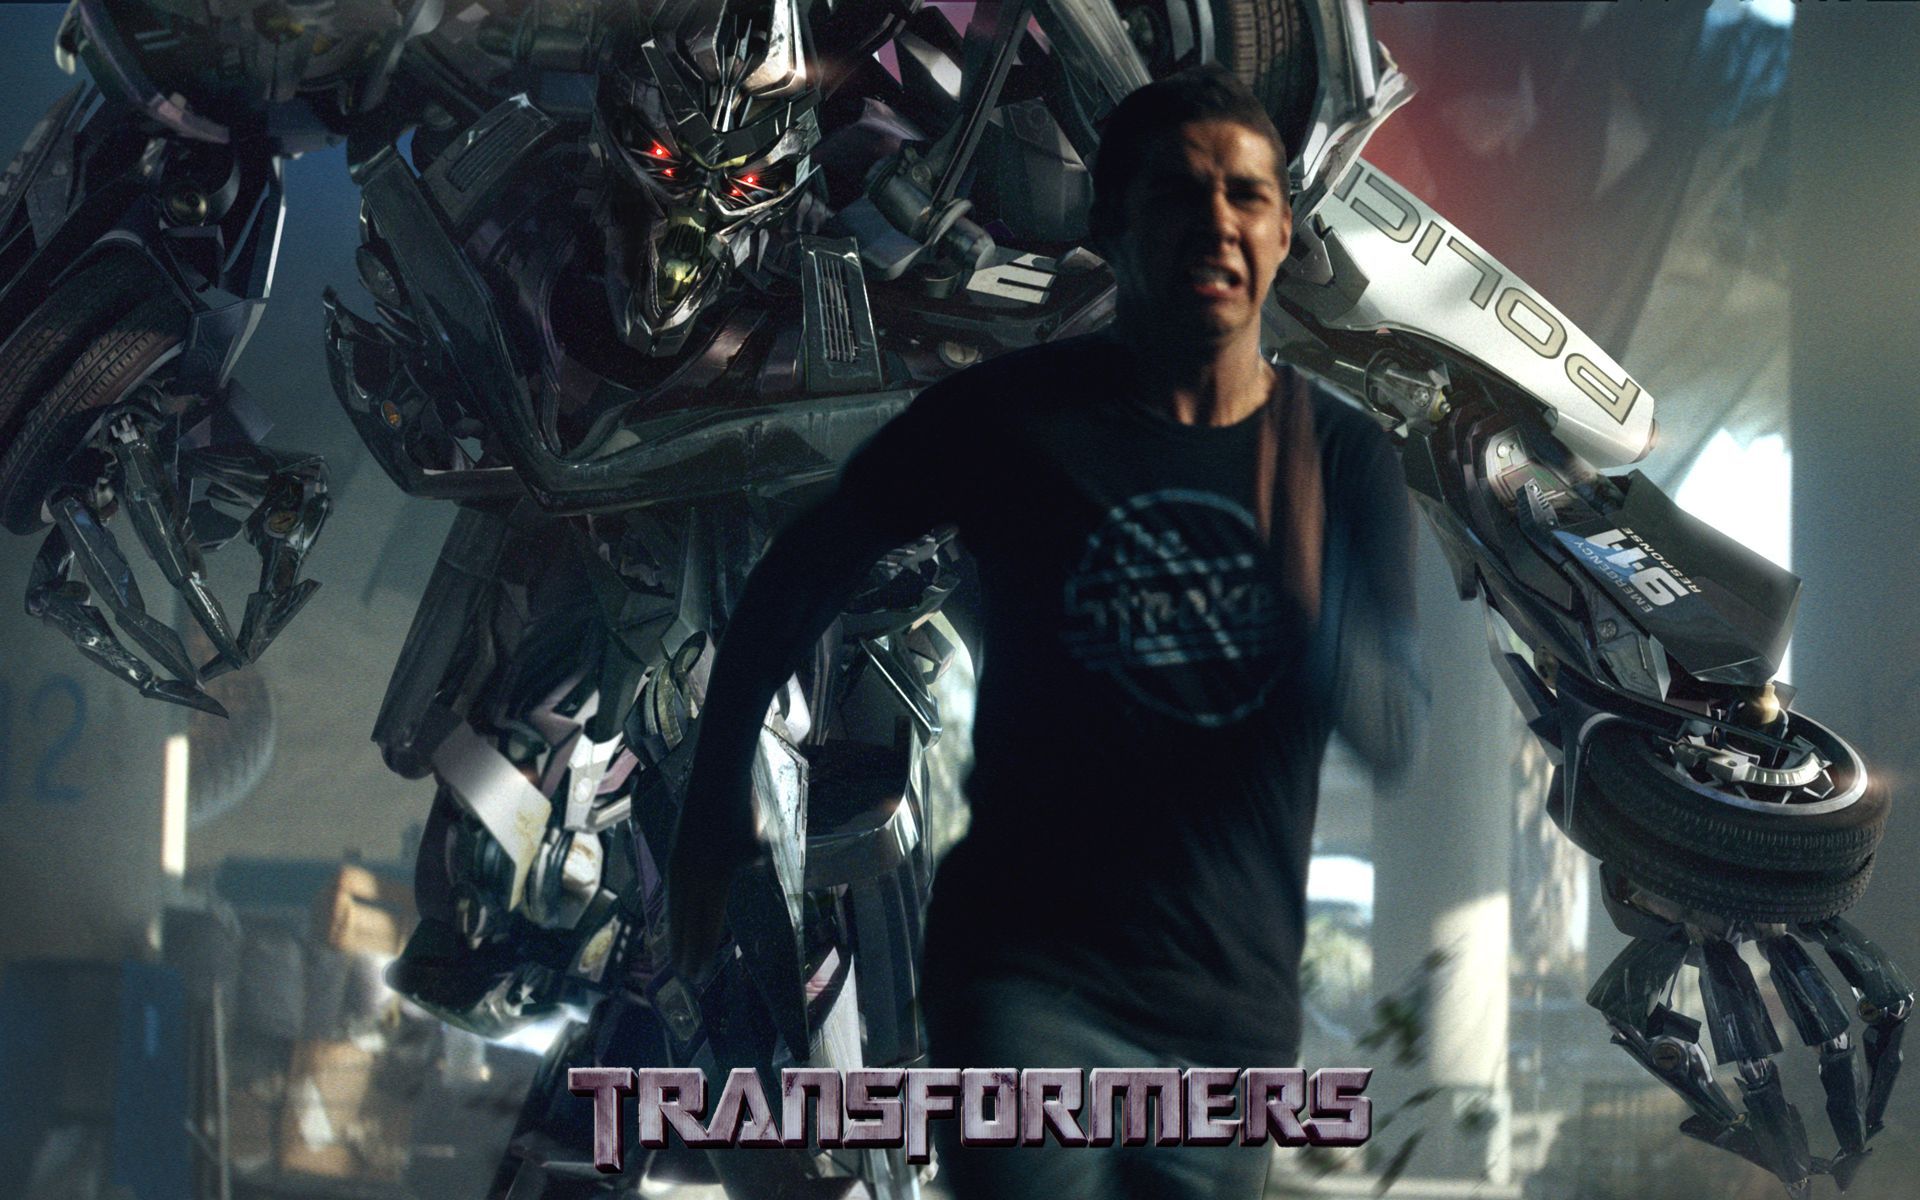 Still like The Strokes? - Transformers Wallpaper (523025) - Fanpop